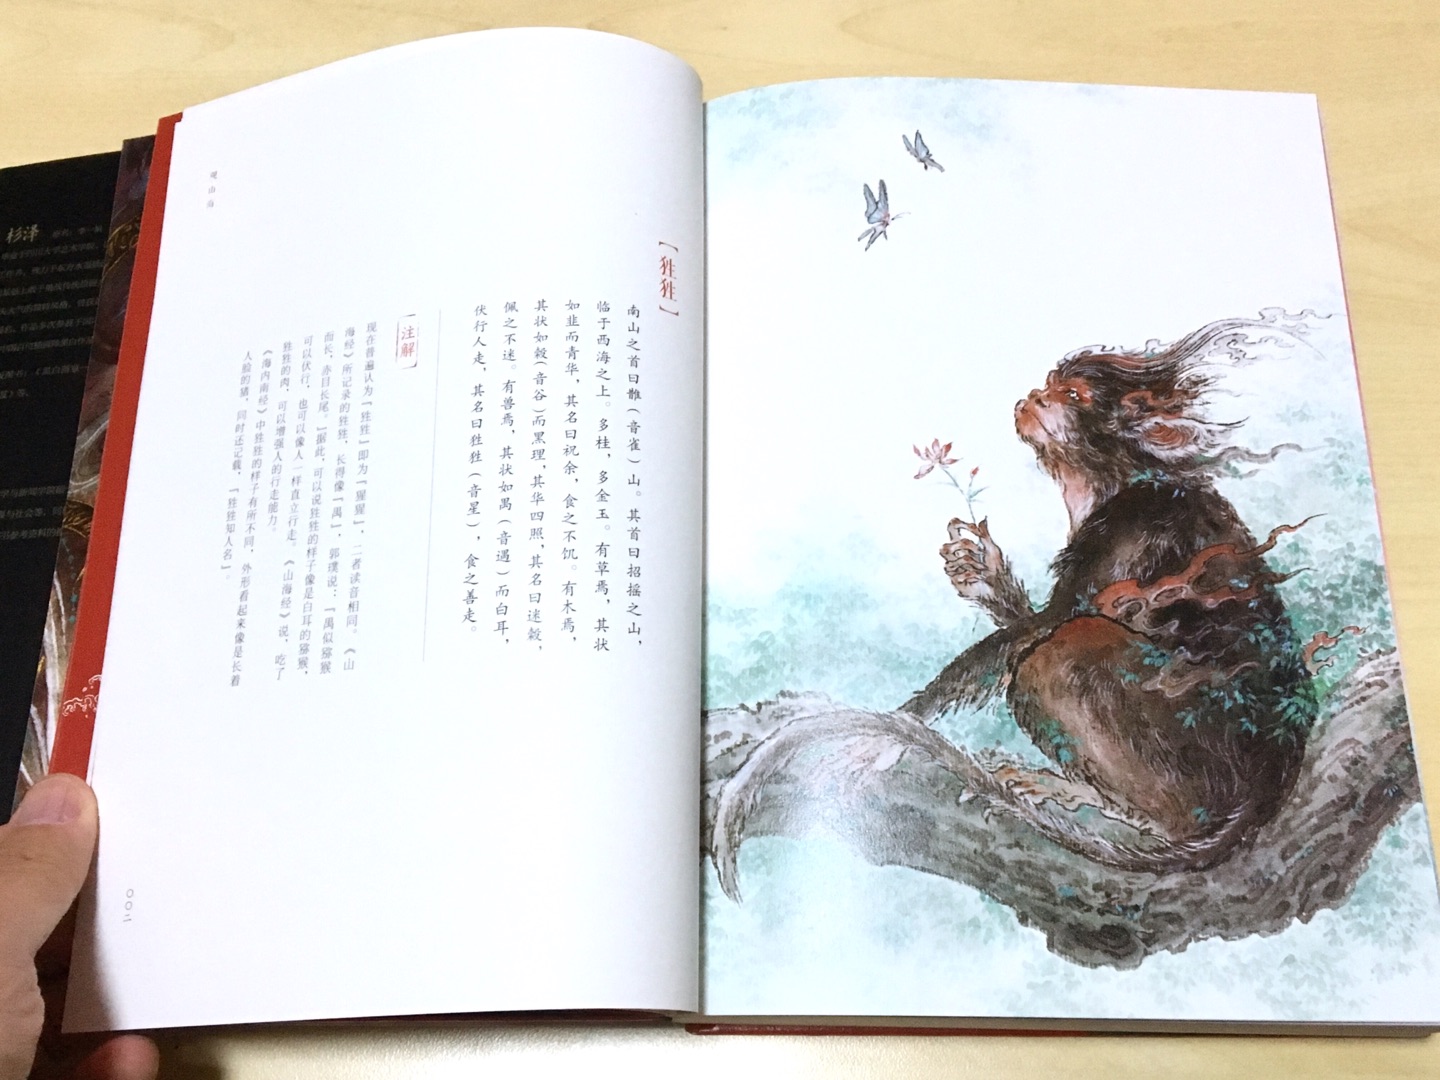 画风玄幻美丽，《山海经》里奇珍异兽的具体化呈现，精装本，装帧很考究，真正的高大上图书。